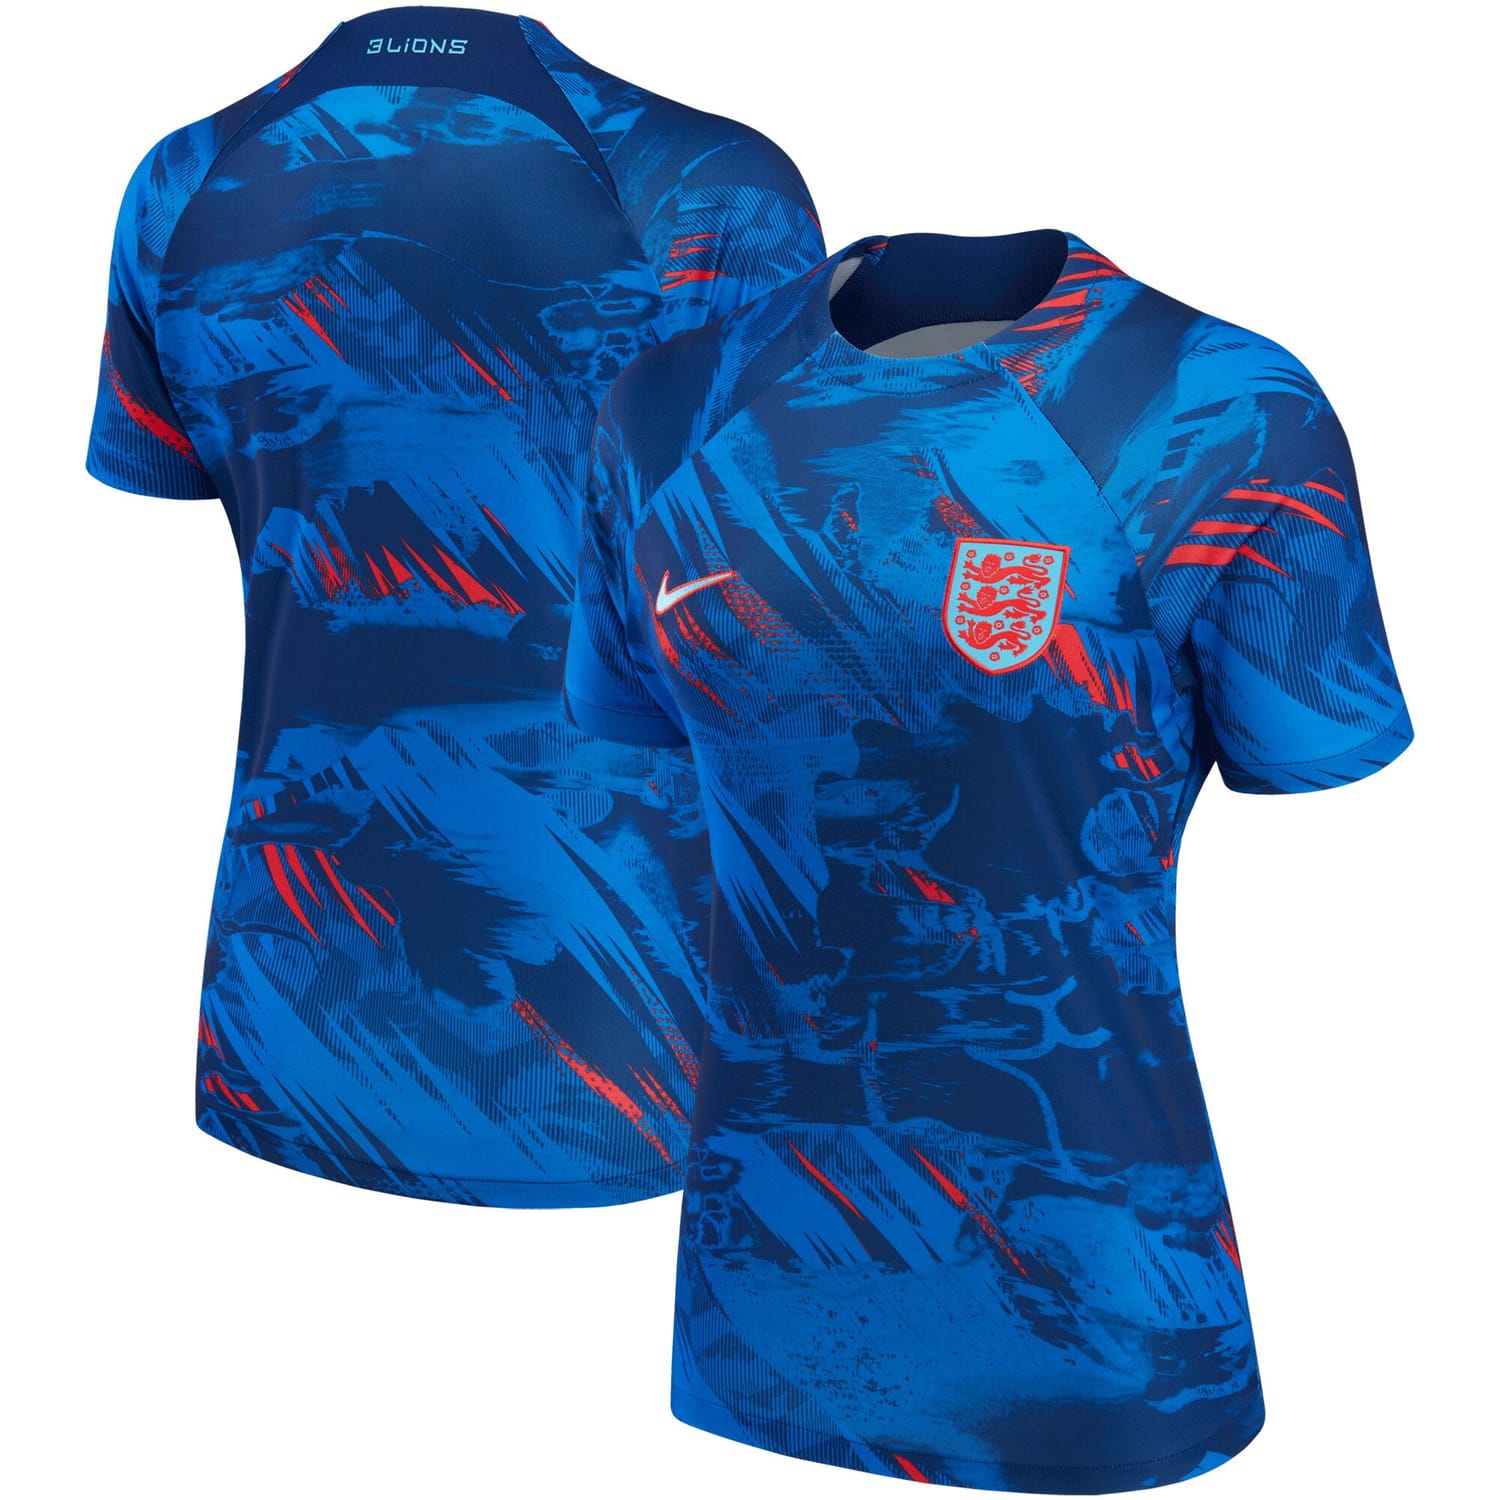 England National Team Pre-Match Jersey Shirt Blue 2022 for Women